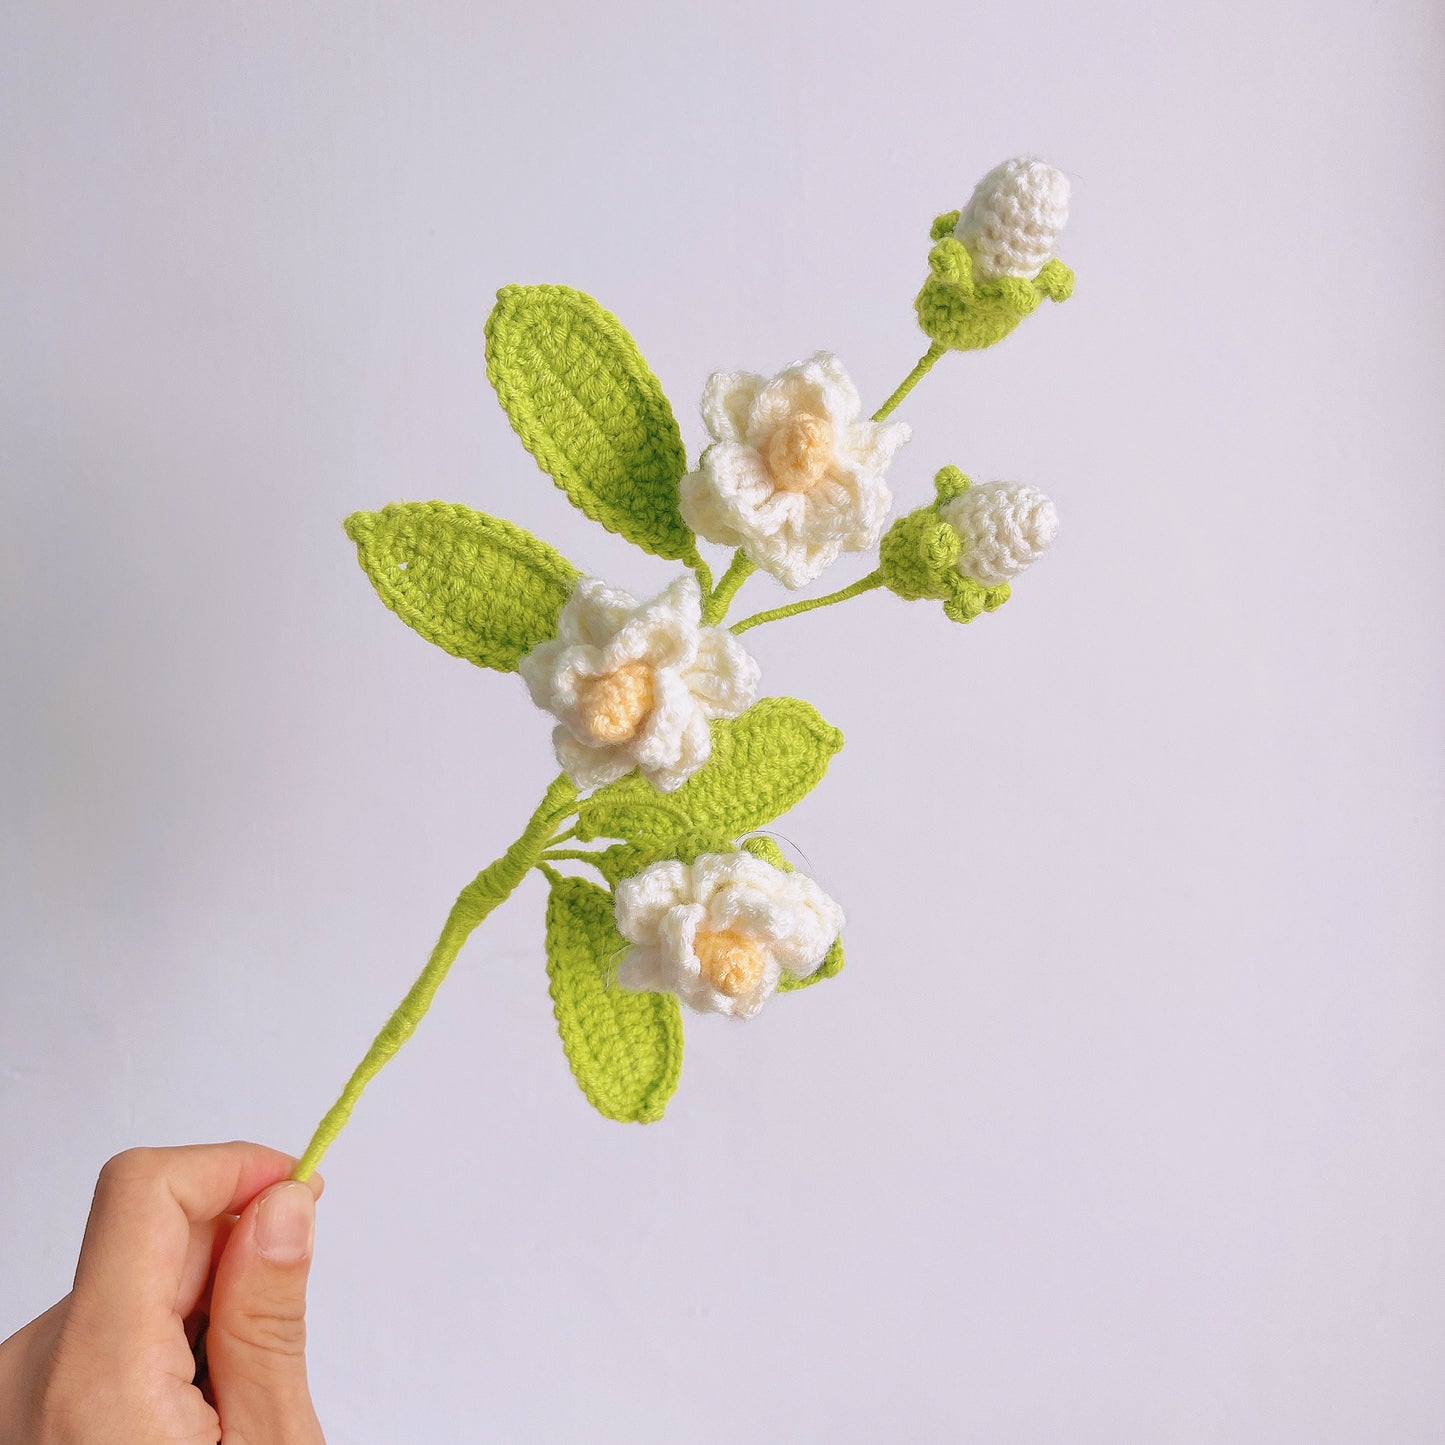 Handgefertigte gehäkelte Jasminblüte – wunderschön, lebendig und ein wahres Kunstwerk